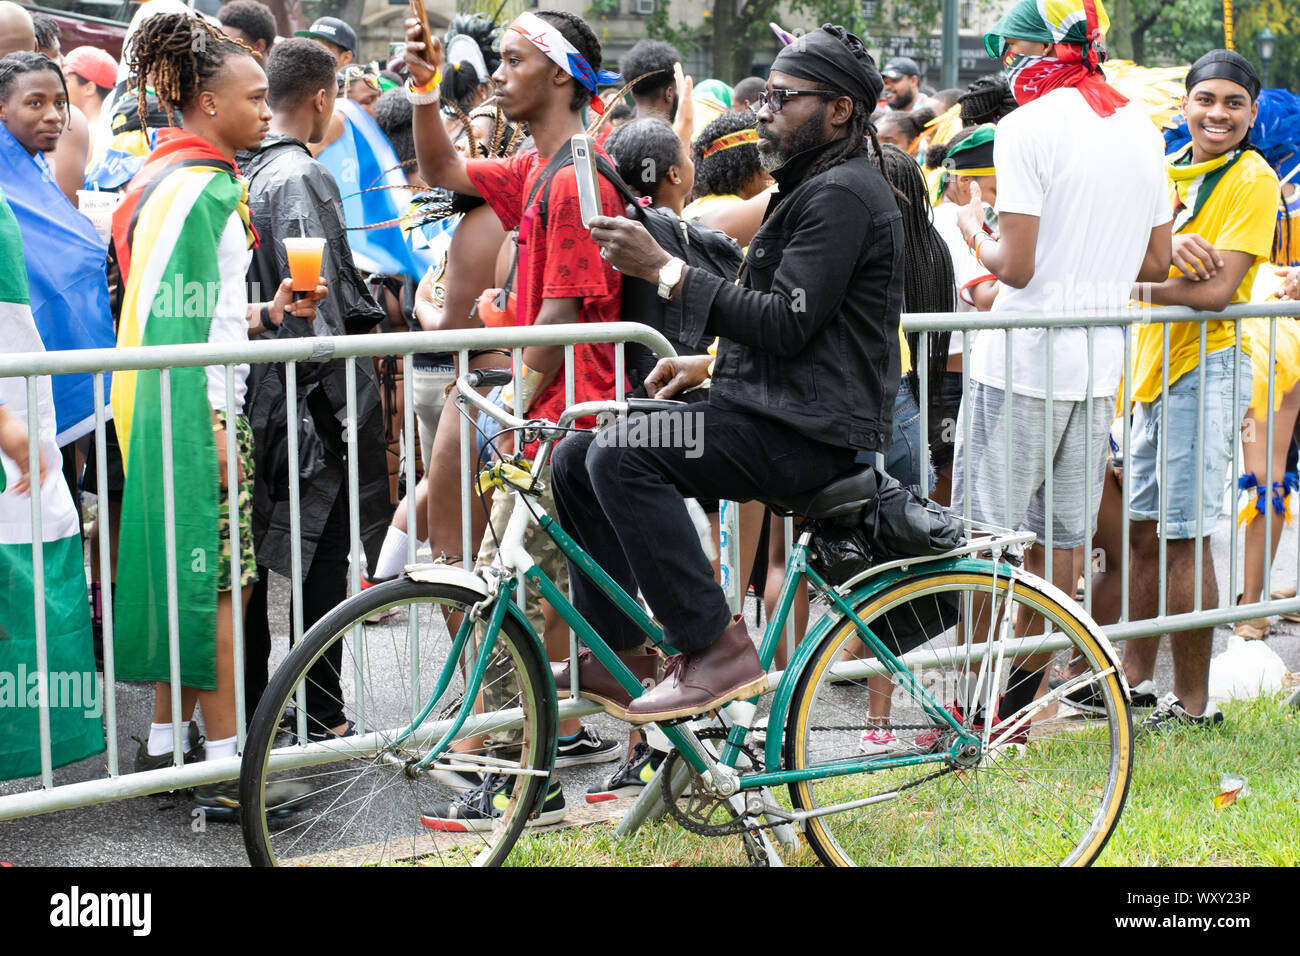 Hinter Zaun dem, un welcher die West Indian Day Parade entlang geht, sitzt ein Mann auf seinem Fahhrad und macht Fotos mit seinem Handy von den bunt un Foto Stock